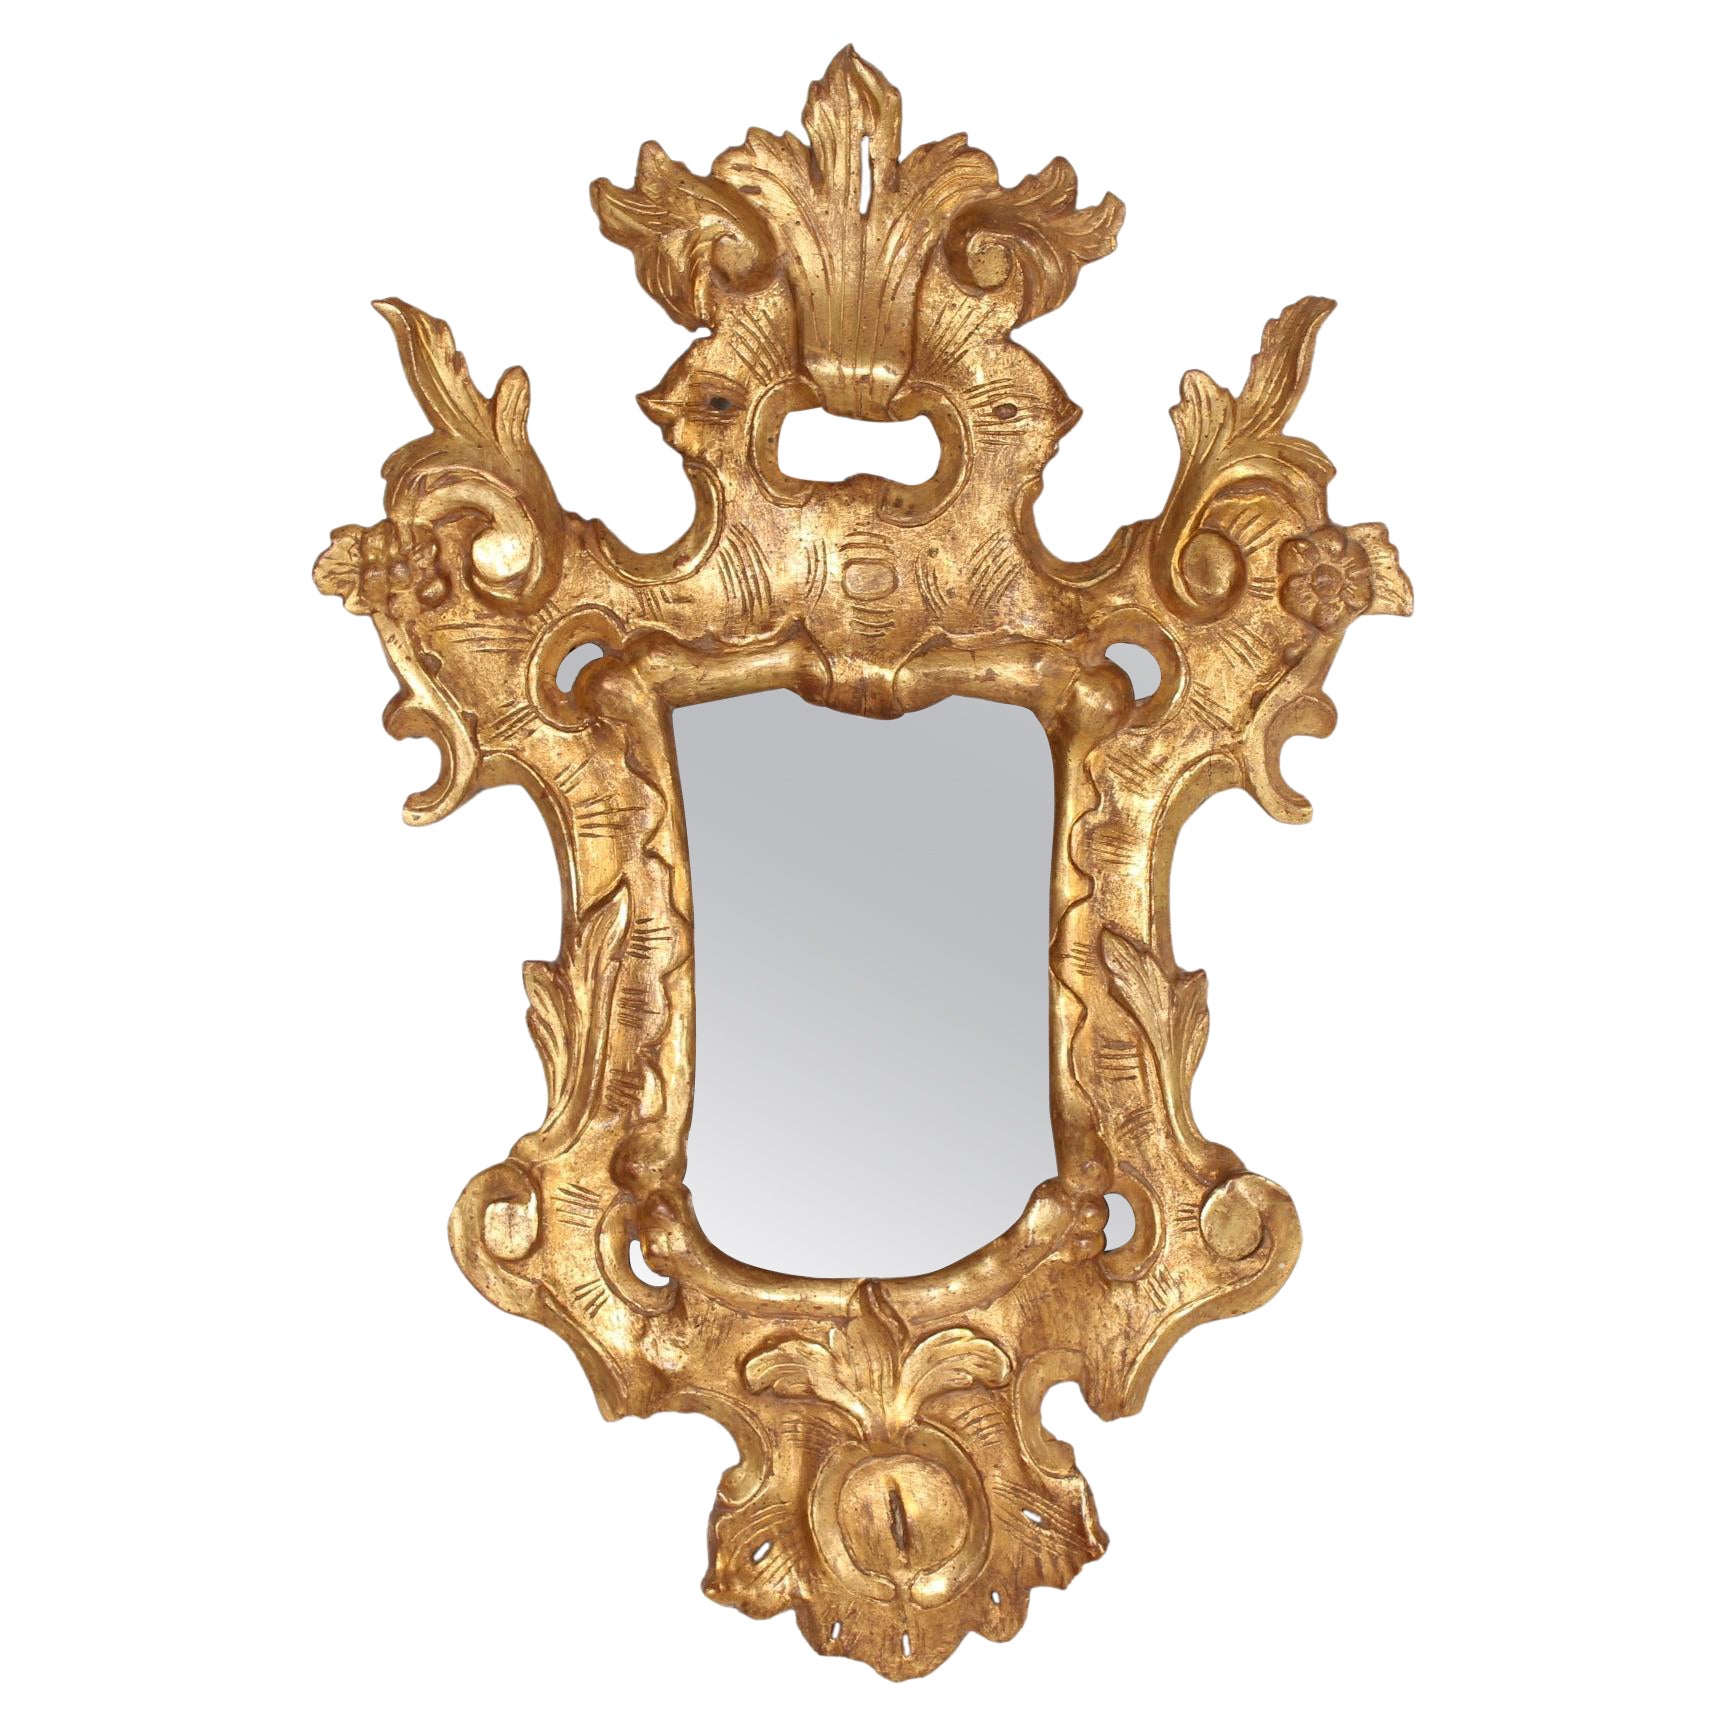 Europäischer europäischer Rokoko-Spiegel aus vergoldetem Holz mit durchbrochenen Verzierungen + altes Spiegelglas 1800er Jahre